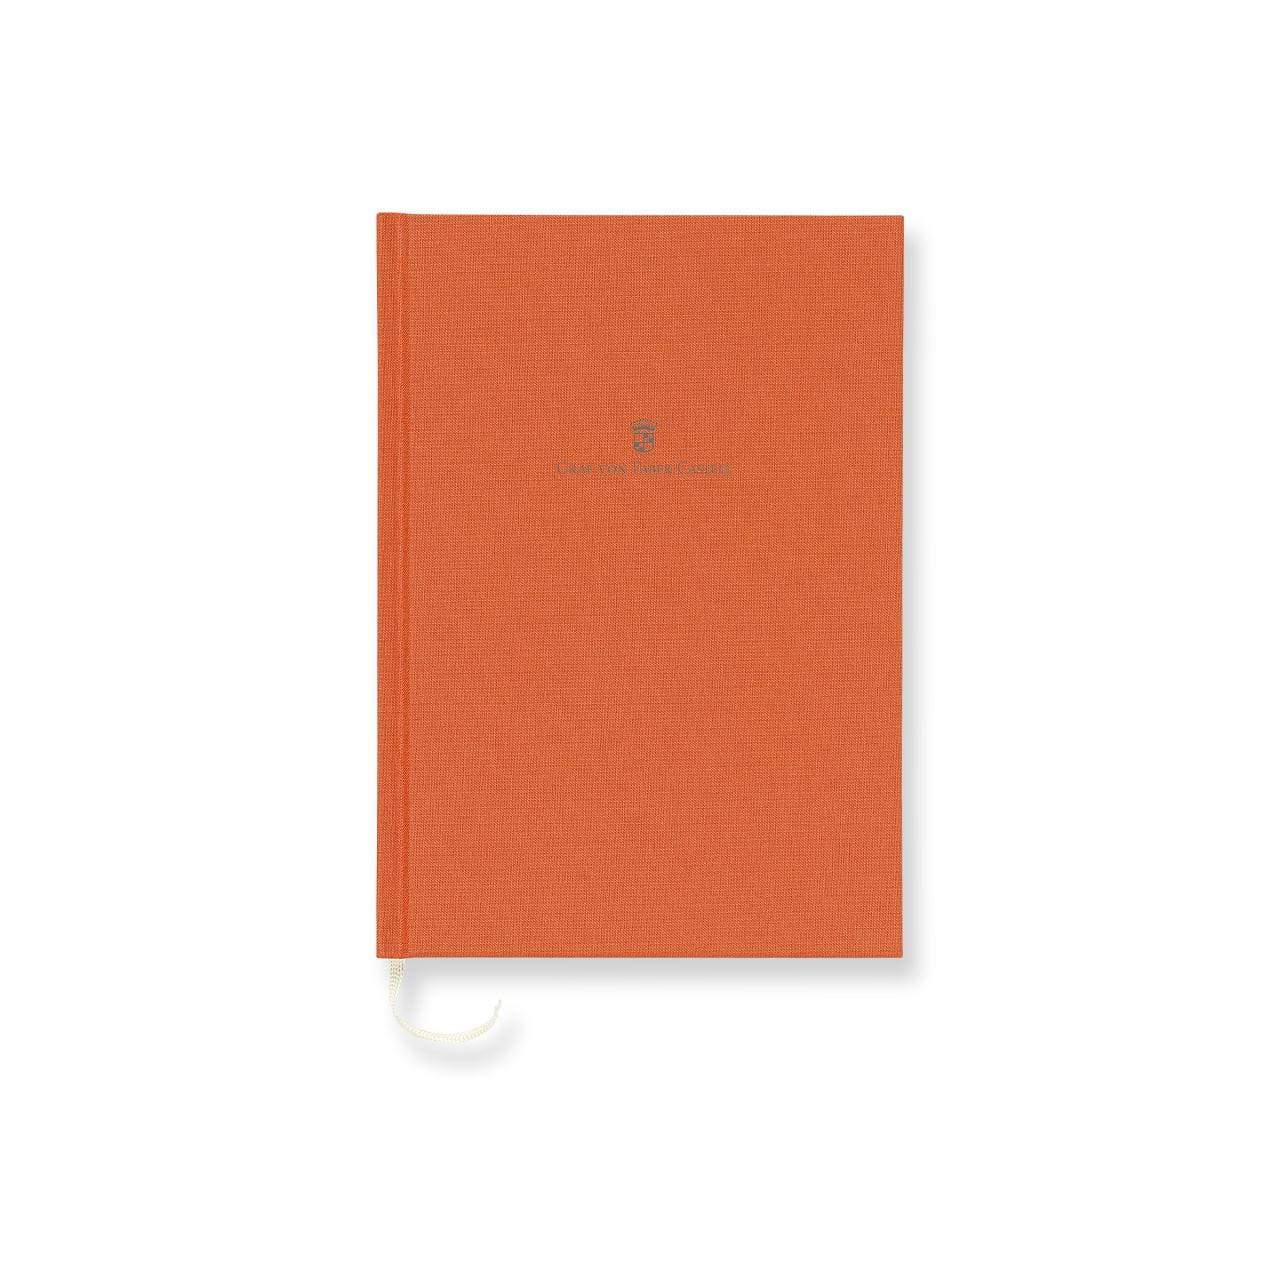 Graf-von-Faber-Castell - Book con copertina in lino formato A5, Arancio